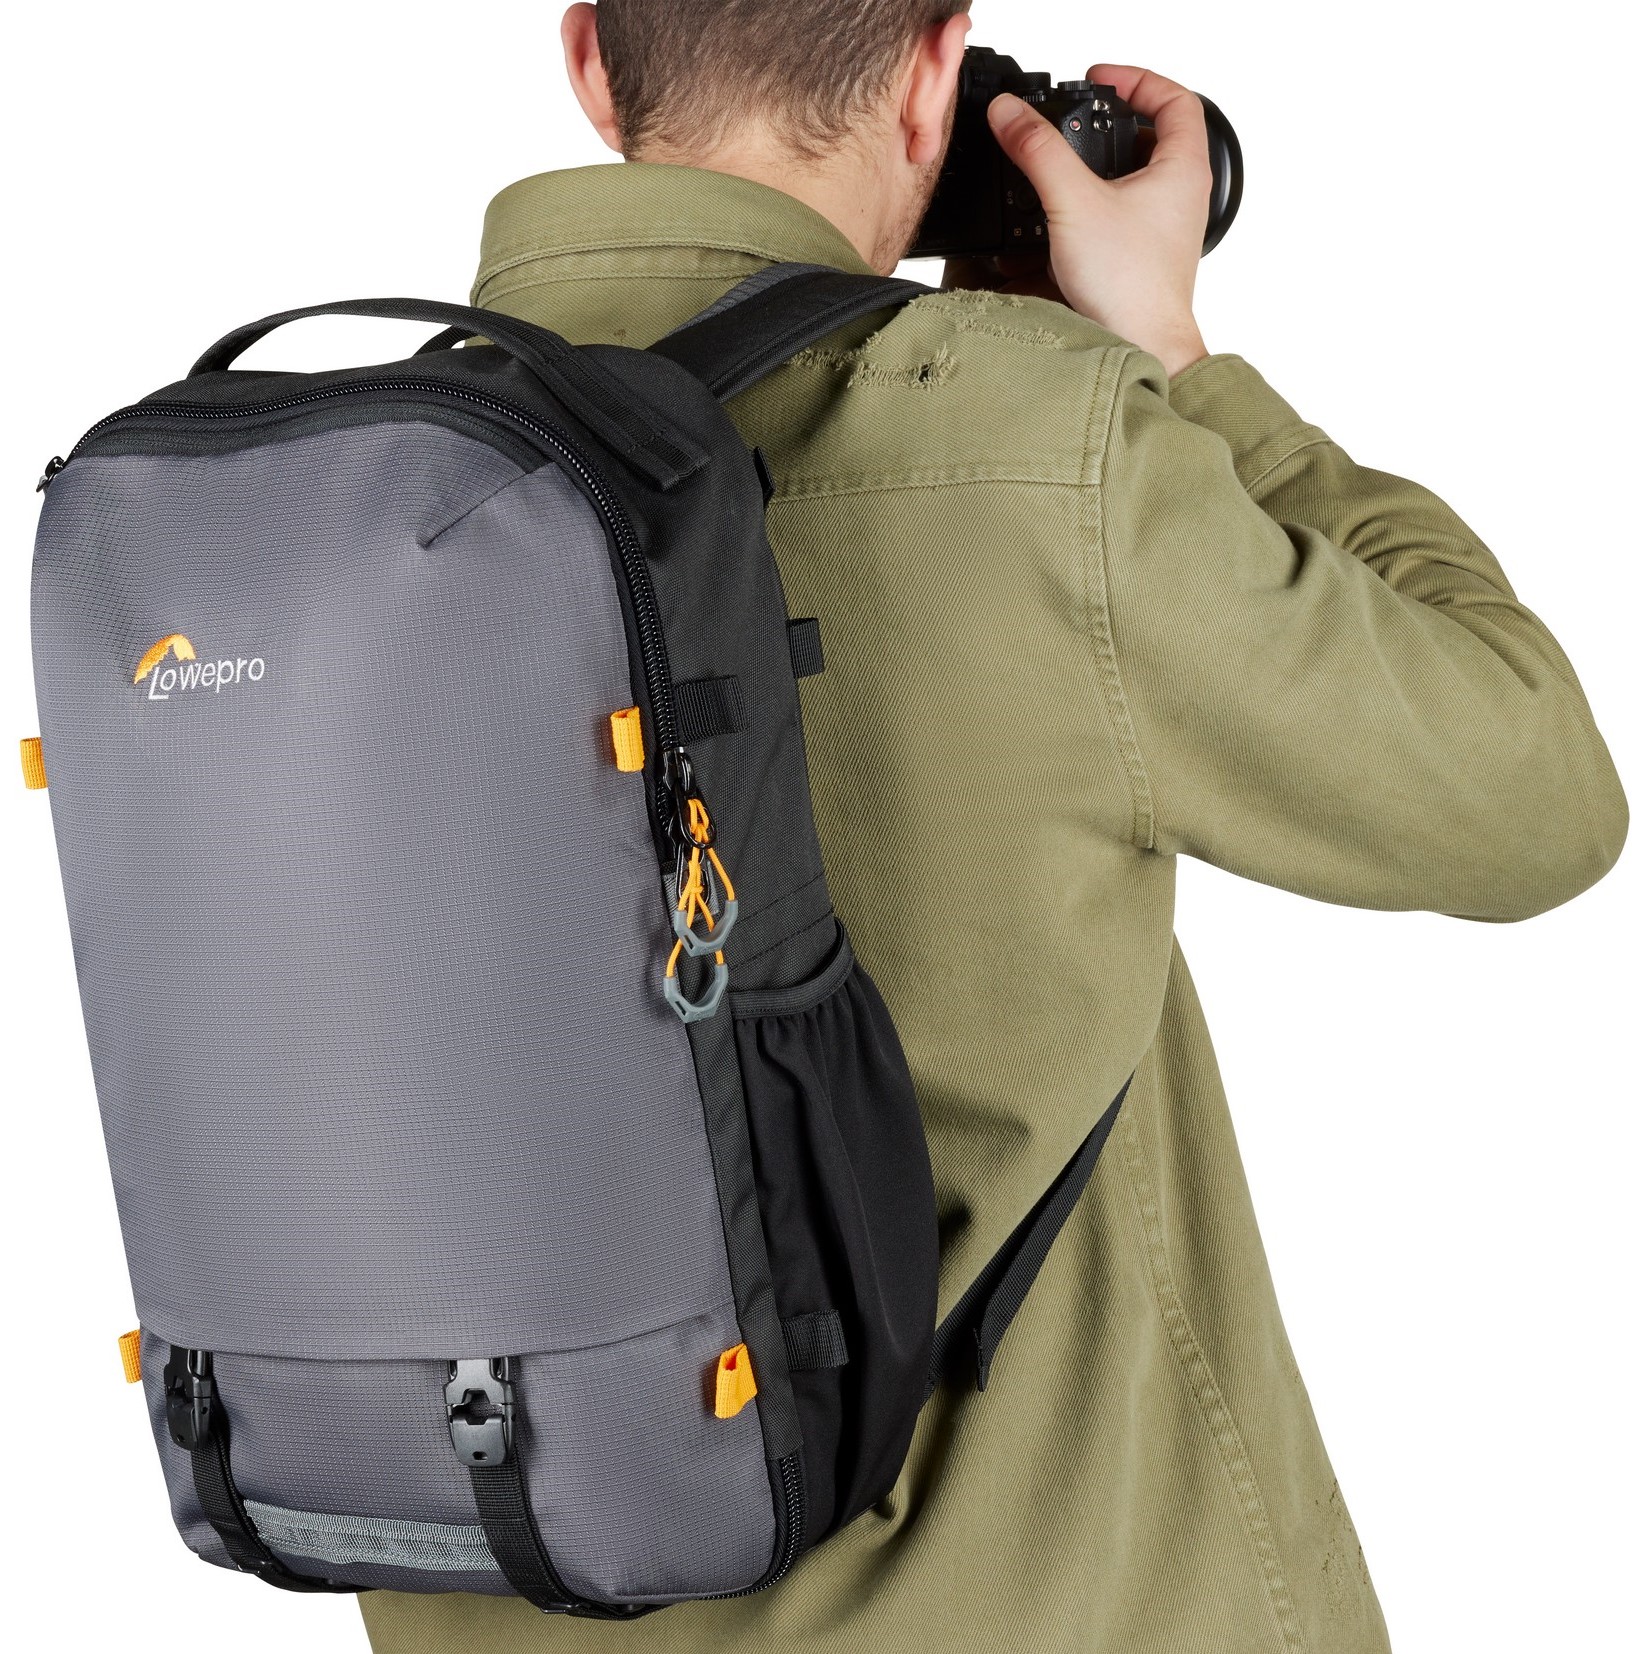    Backpack Lowepro TrekkerLite BP 250 AW Grey